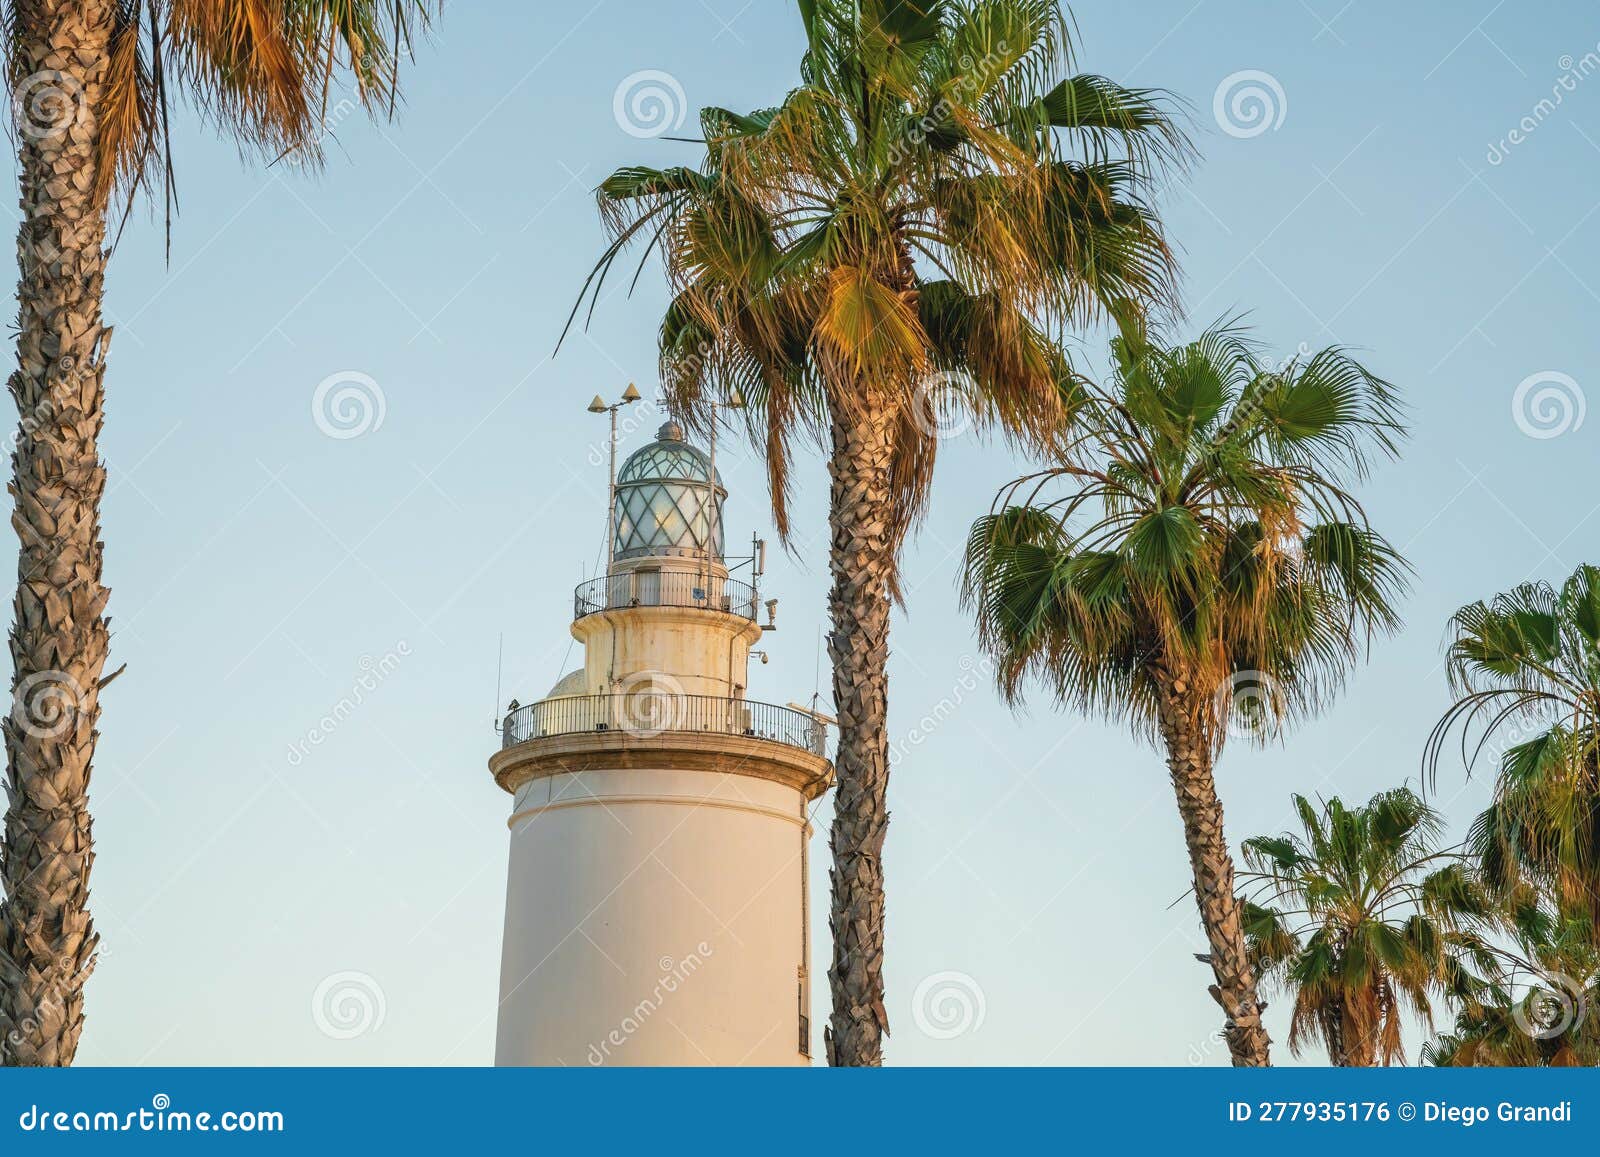 malaga lighthouse (la farola) and palm trees - malaga, andalusia, spain